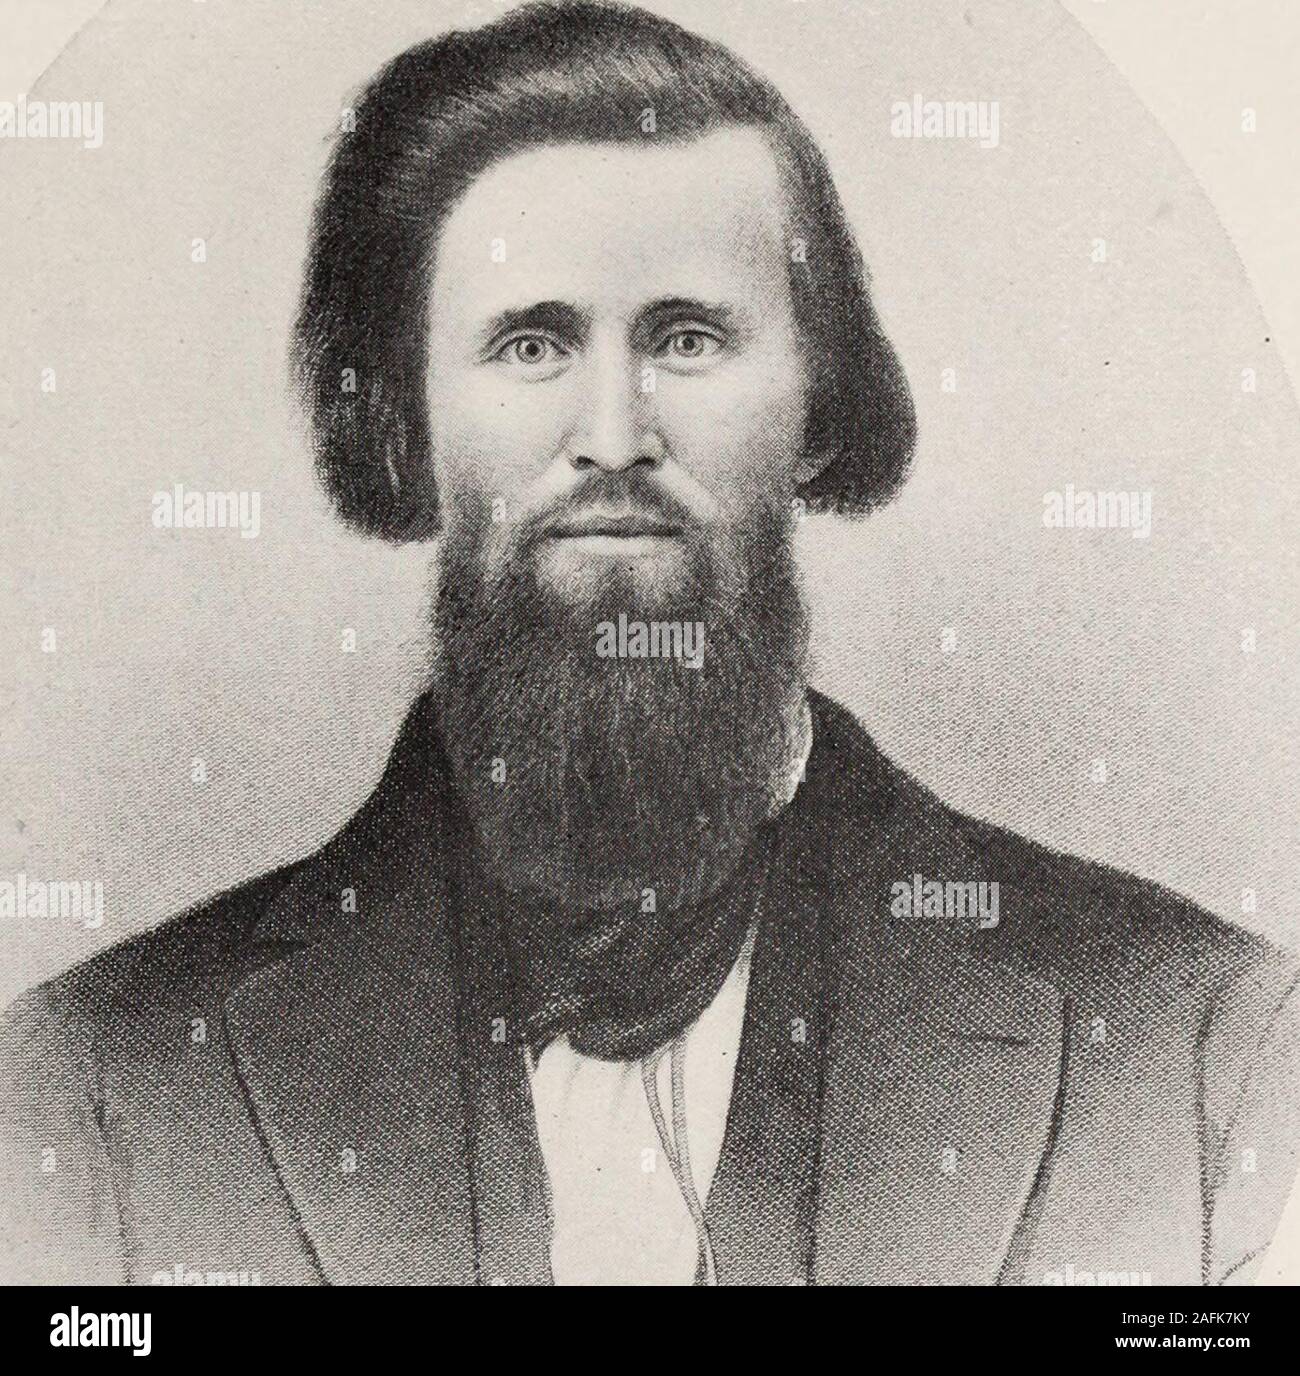 . Diario della spedizione Washburn a Yellowstone e fiumi Firehole nell'anno 1870. lly della loro. Gen. Henry D. Washburn è stato geometra ofMontana generale ed era stato brevetted una maggiore generale per serv-ices nella guerra civile, e aveva servito due termini della biella-gress degli Stati Uniti. Giudice Cornelio siepi veniva adistinguished e altamente stimato membro dell'Montanabar. Samuel T. Hauser era un ingegnere civile e fu presi-dent della First National Bank di Helena. Egli è stato dopo-reparti nominato governatore del Montana da Grover Cleveland.Warren C. Gillette e Benjamin Stickney erano pio Foto Stock